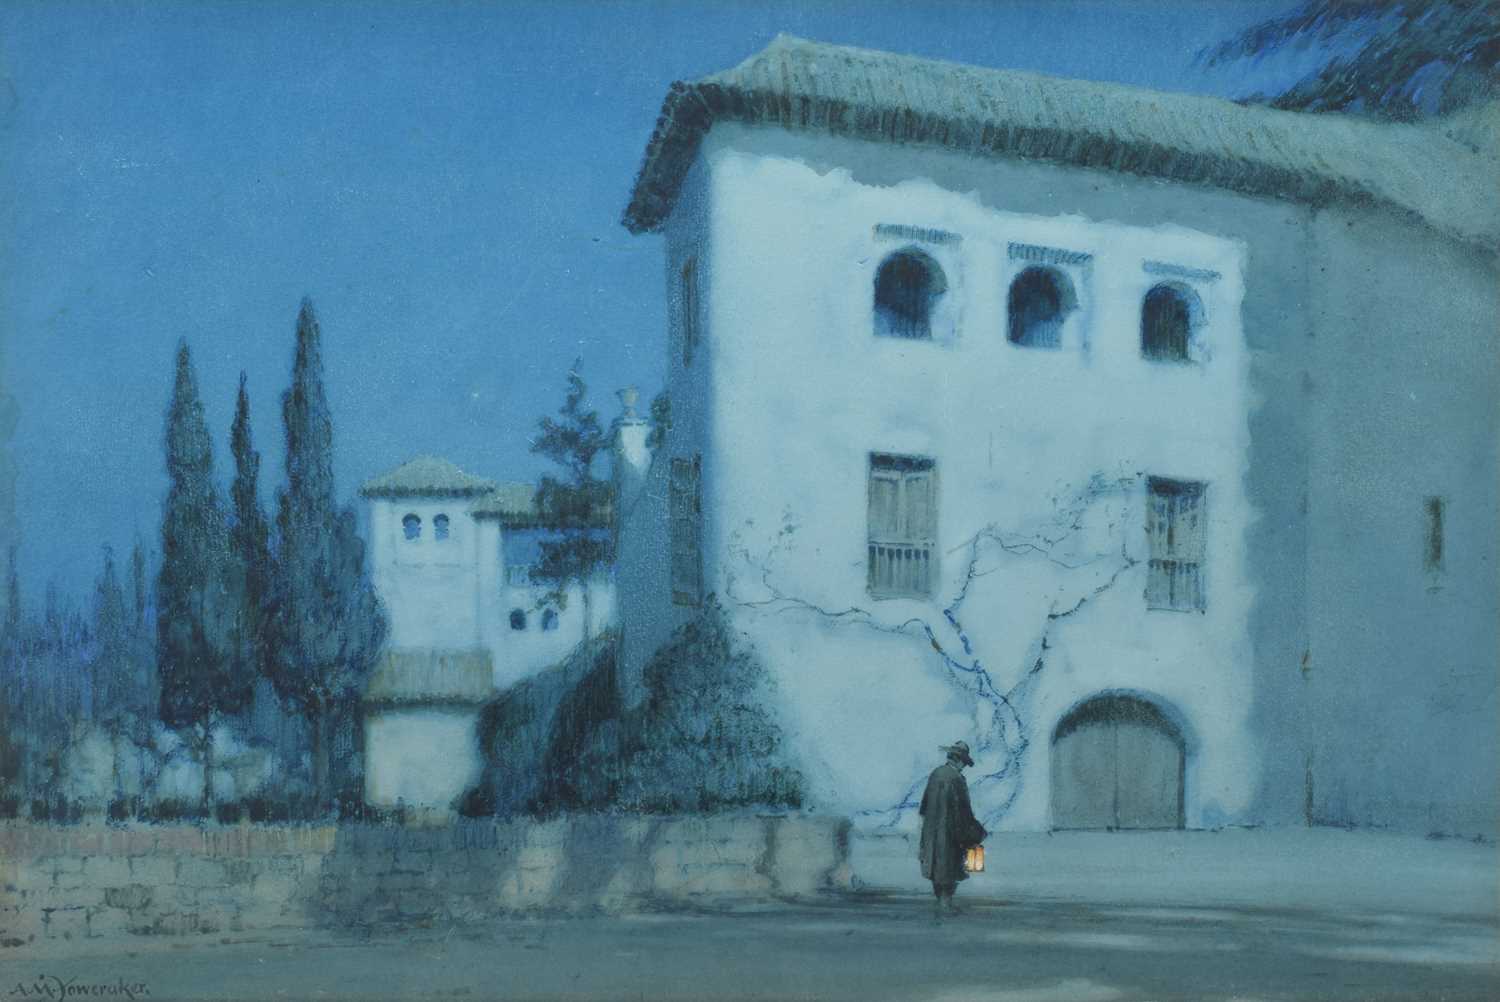 Lot 235 - A.M. Foweraker, "The Generalife, Granada", watercolour.